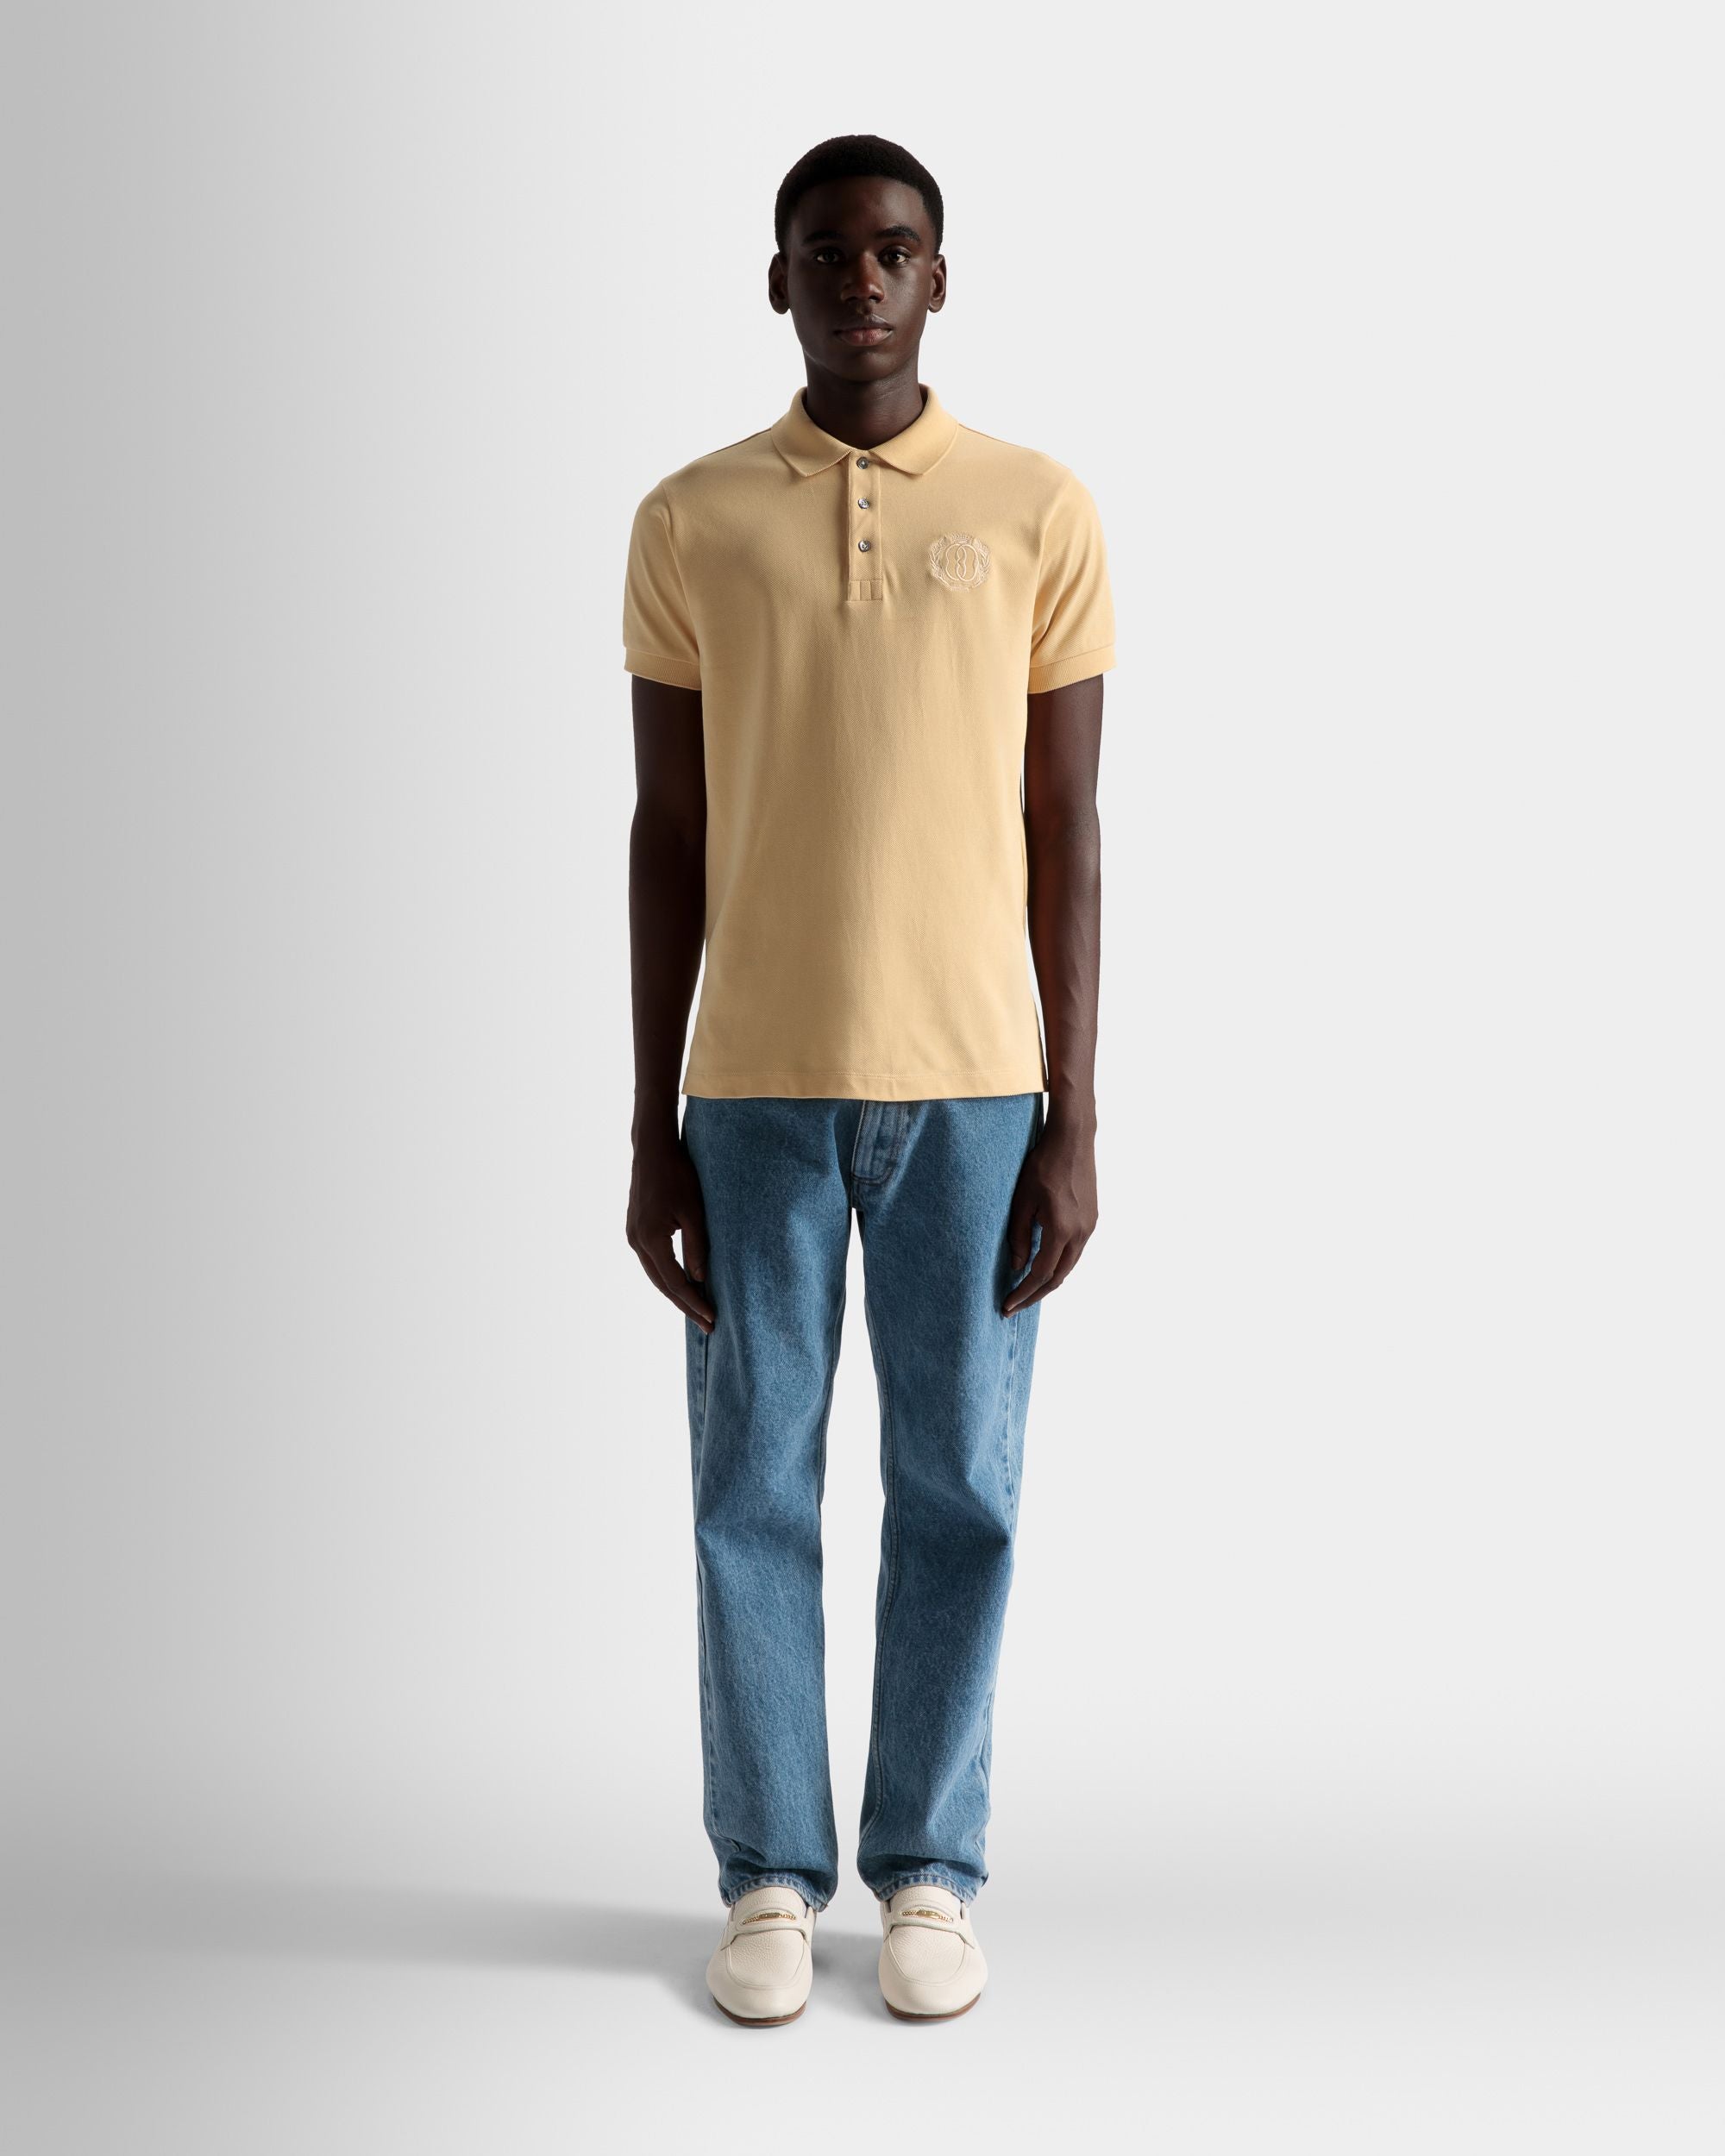 Emblem Poloshirt | Poloshirt für Herren | Cremefarbene Baumwolle | Bally | Model getragen Vorderseite